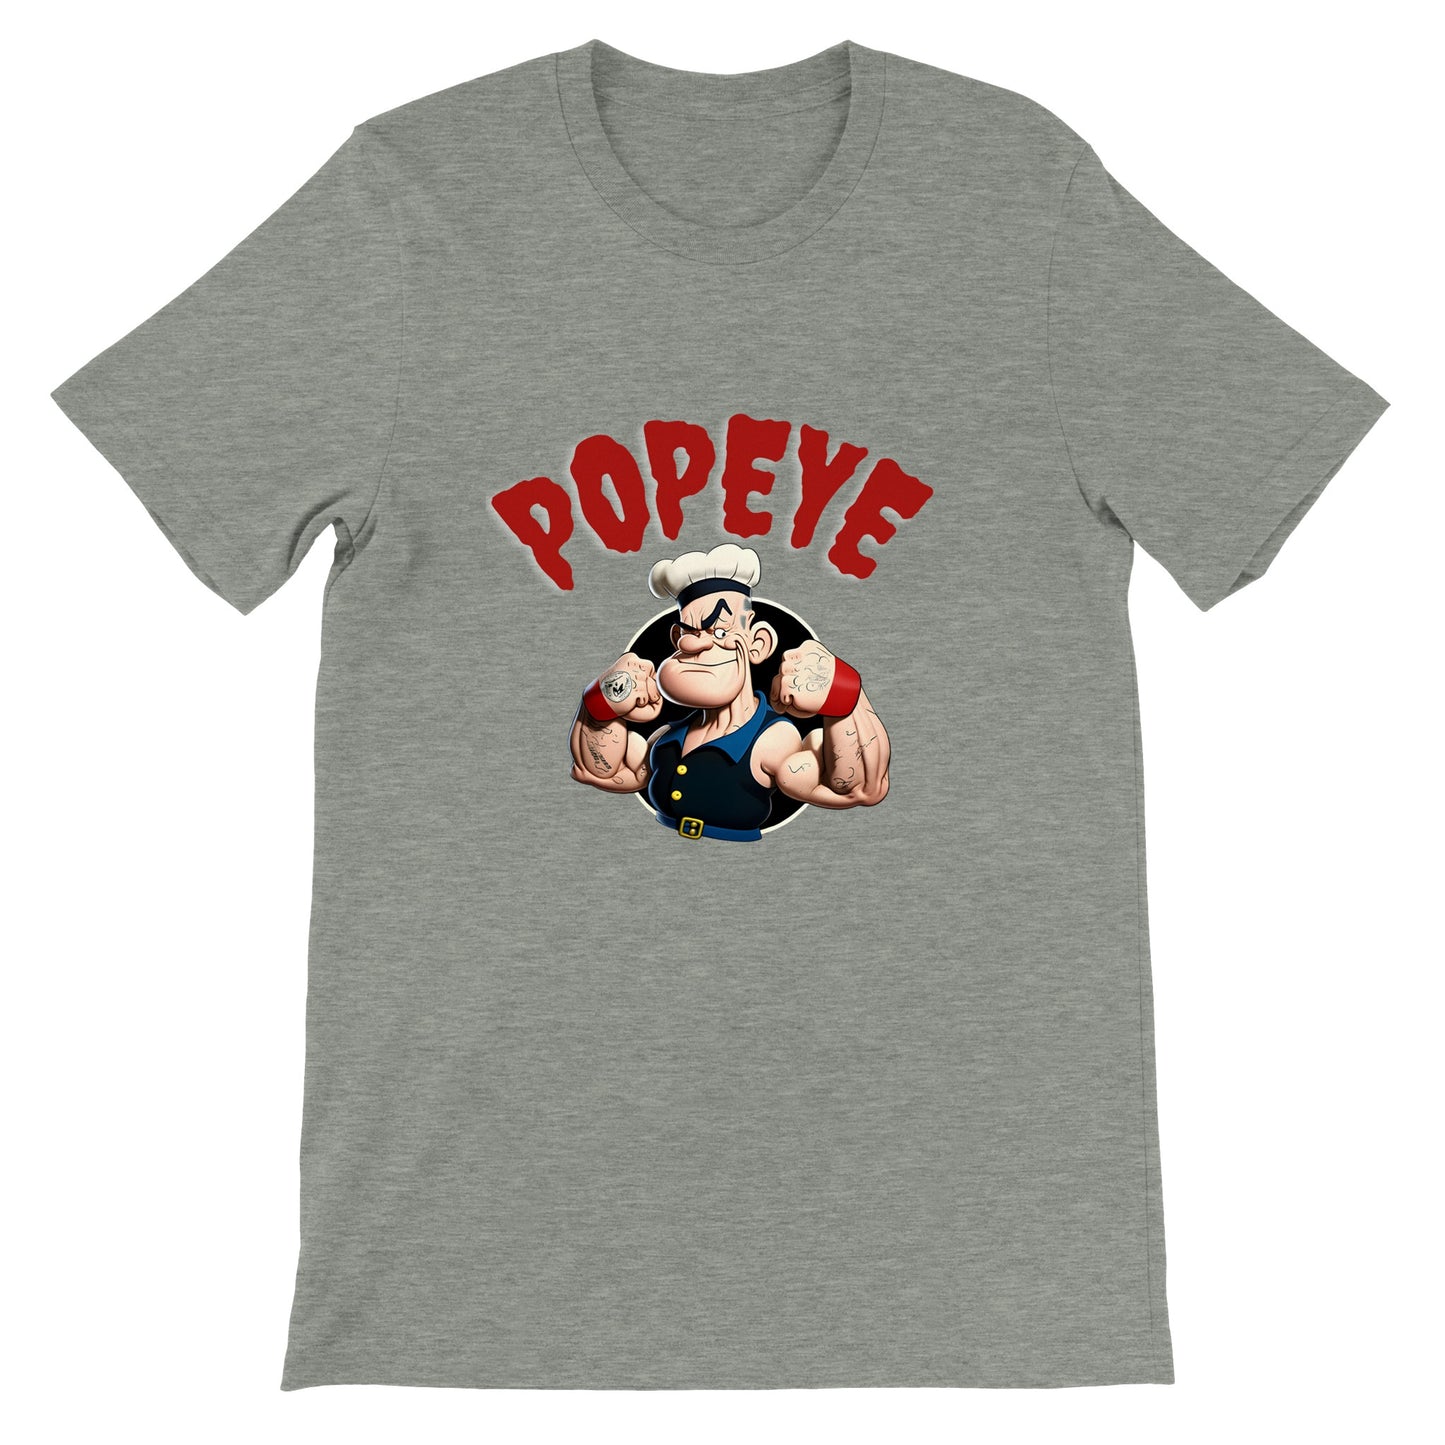 Popeye T-shirt - Popeye Muscle Artwork - Premium Unisex T-shirt